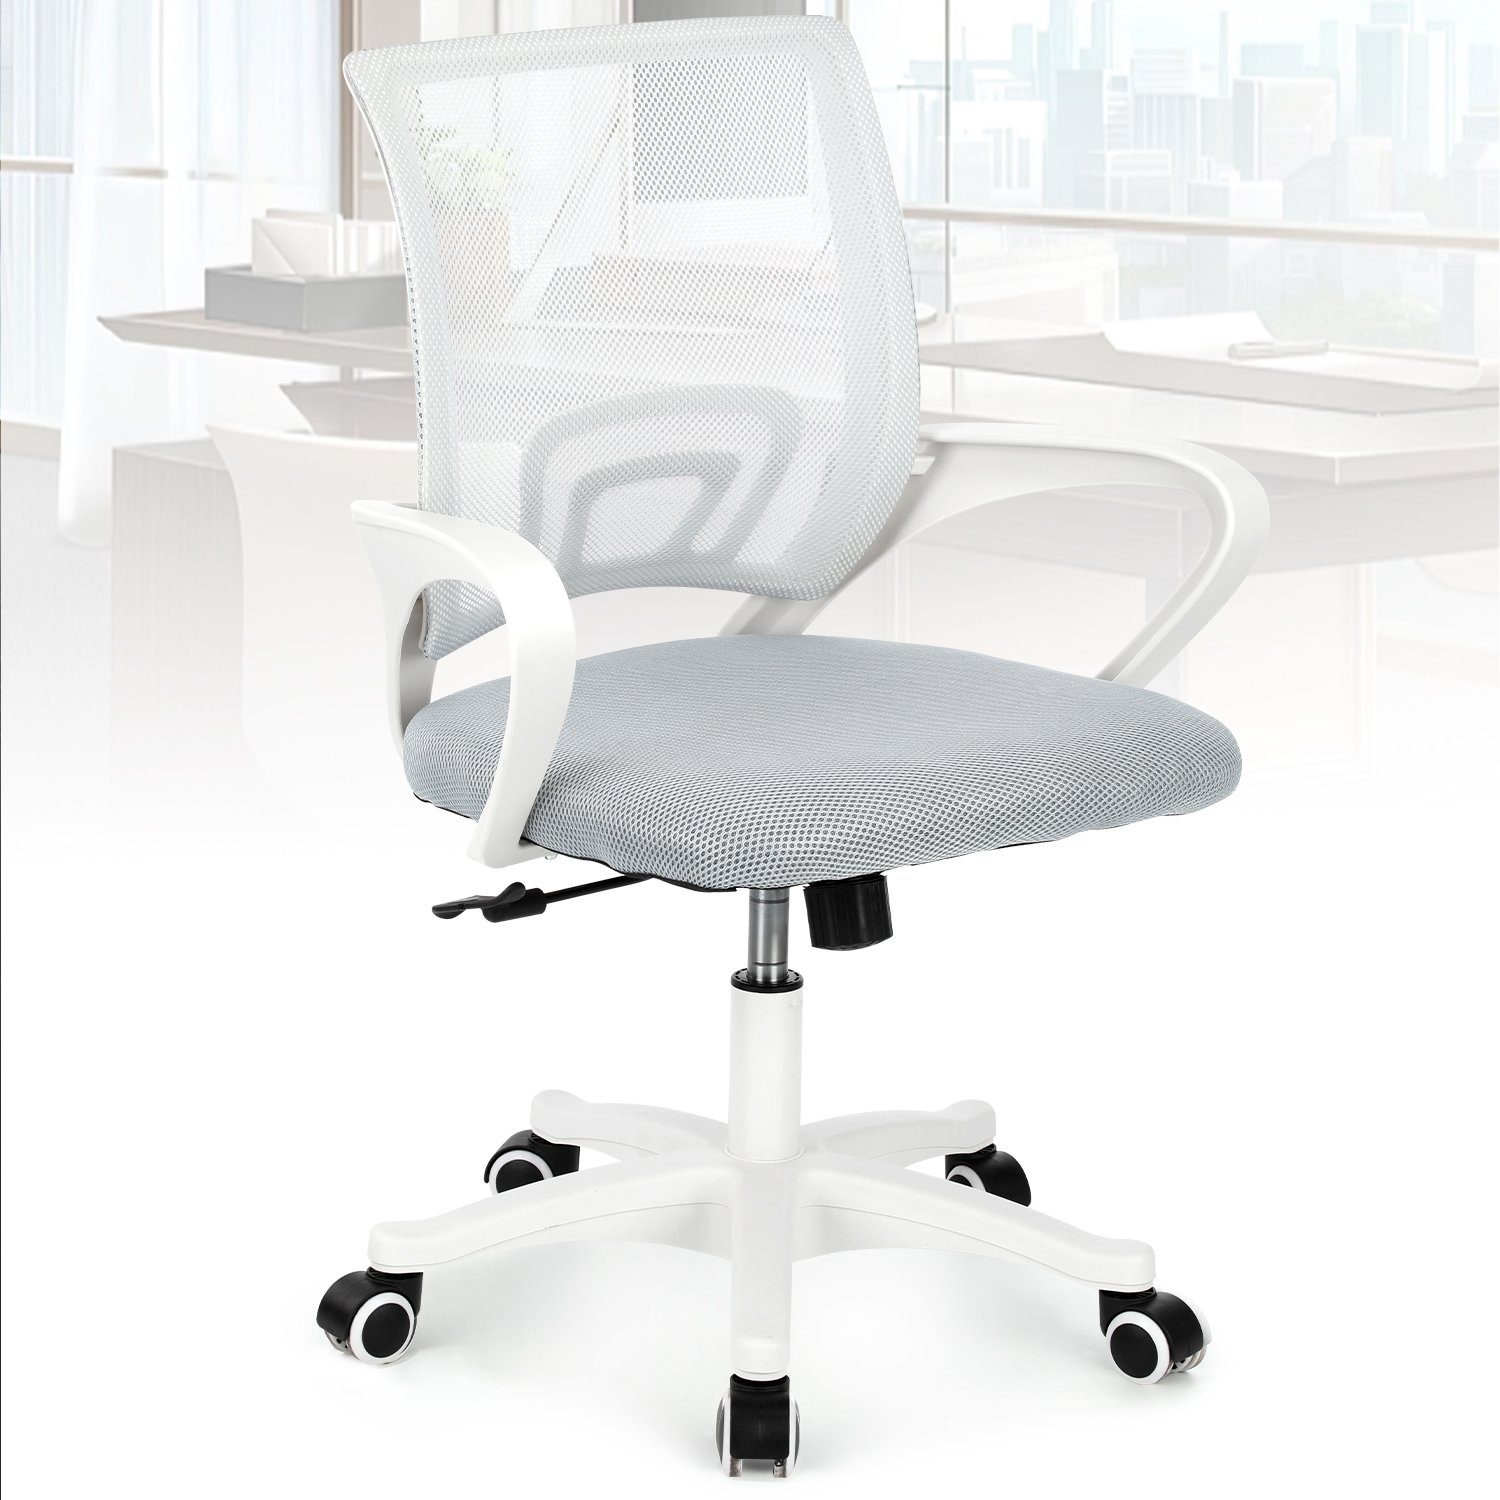 Gepolsterte Höhenverstellbar LETGOSPT Wippfunktion Fußkreuz, 90°-135° Weiß-TB0004 Verchromten Schreibtischstuhl Kunststoffrollen, Ergonomischer Sitzfläche, Chair, 5 Schreibtischstuhl